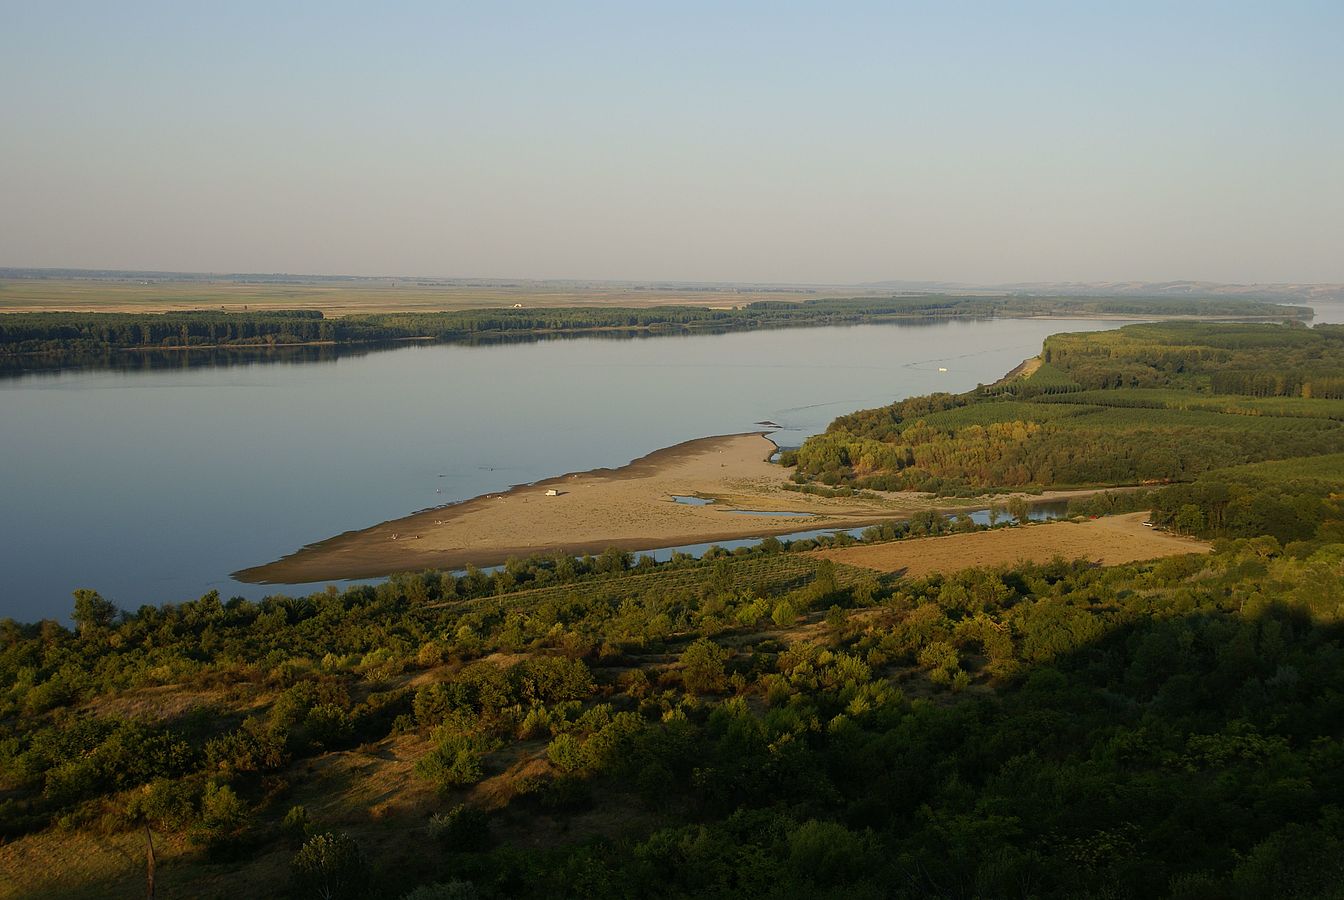 Wasser kennt Grenzen - Zustand der Flüsse in Ost und West unterscheidet sich stark